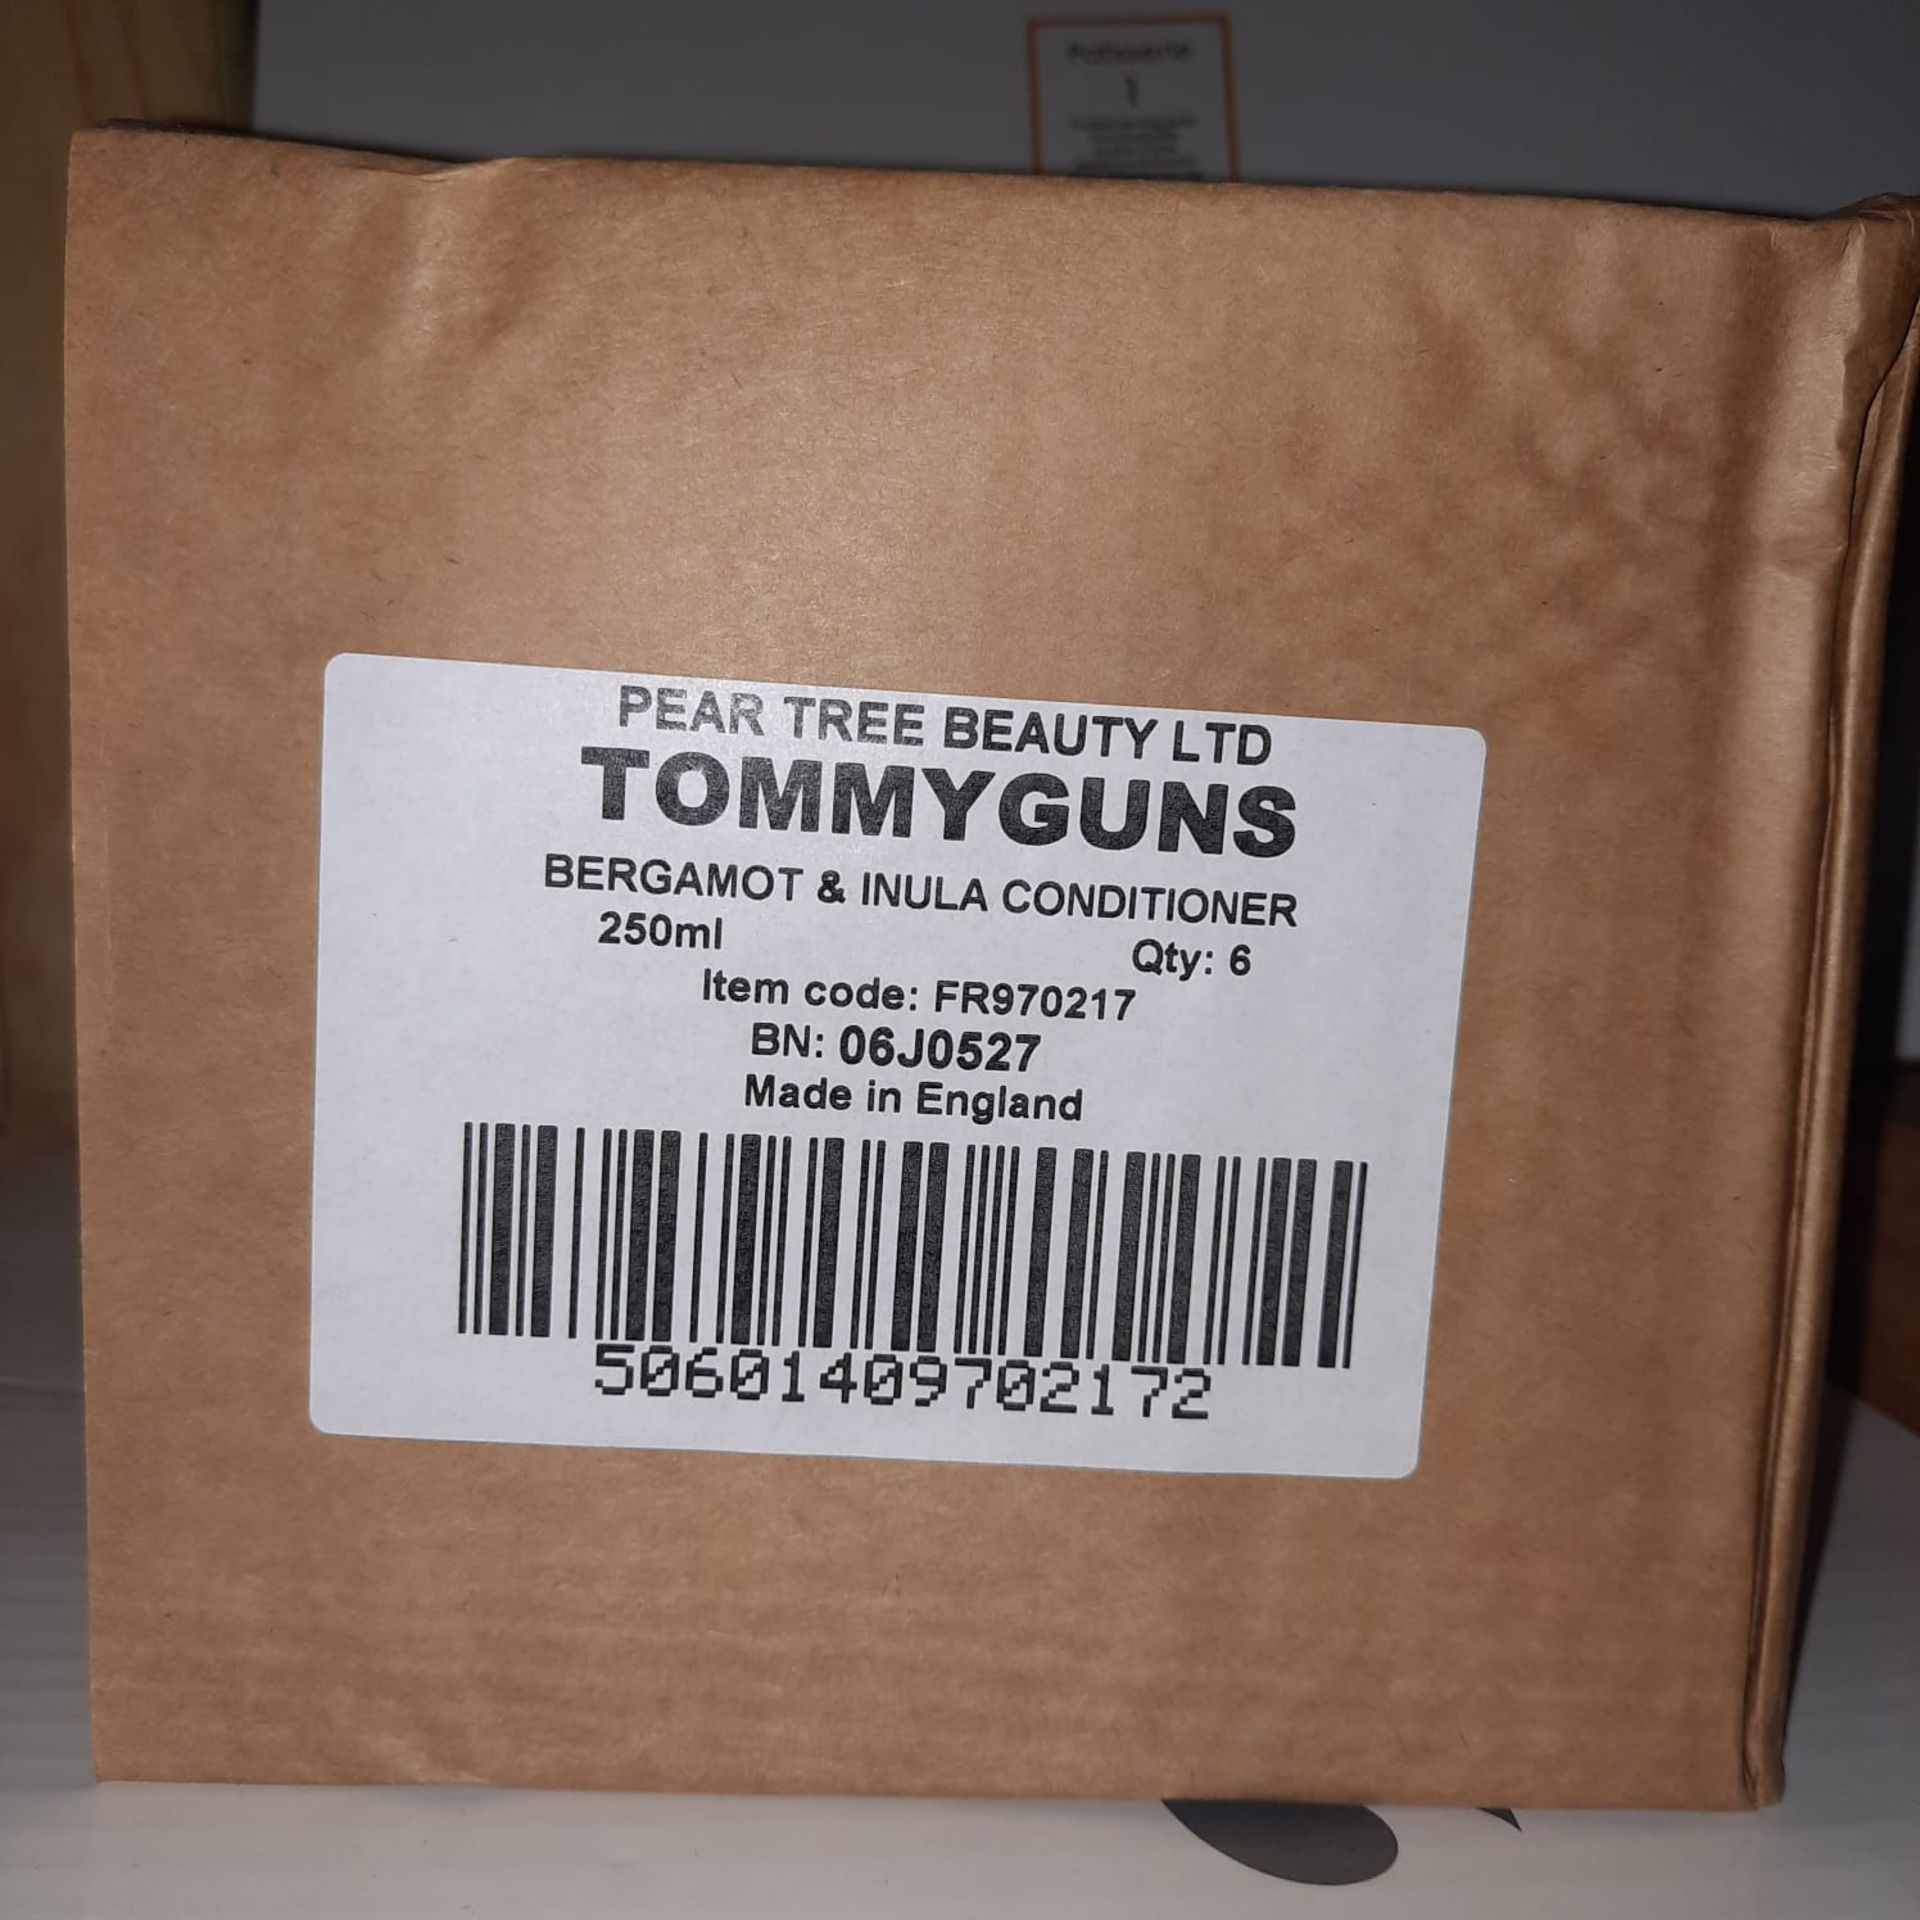 X 3 BOXES OF 6 TOMMYGUNS BERGAMOT INULA & MANULA HONEY CONDITIONER - RRP £125.64 - EBAY PRICE - - Image 2 of 2